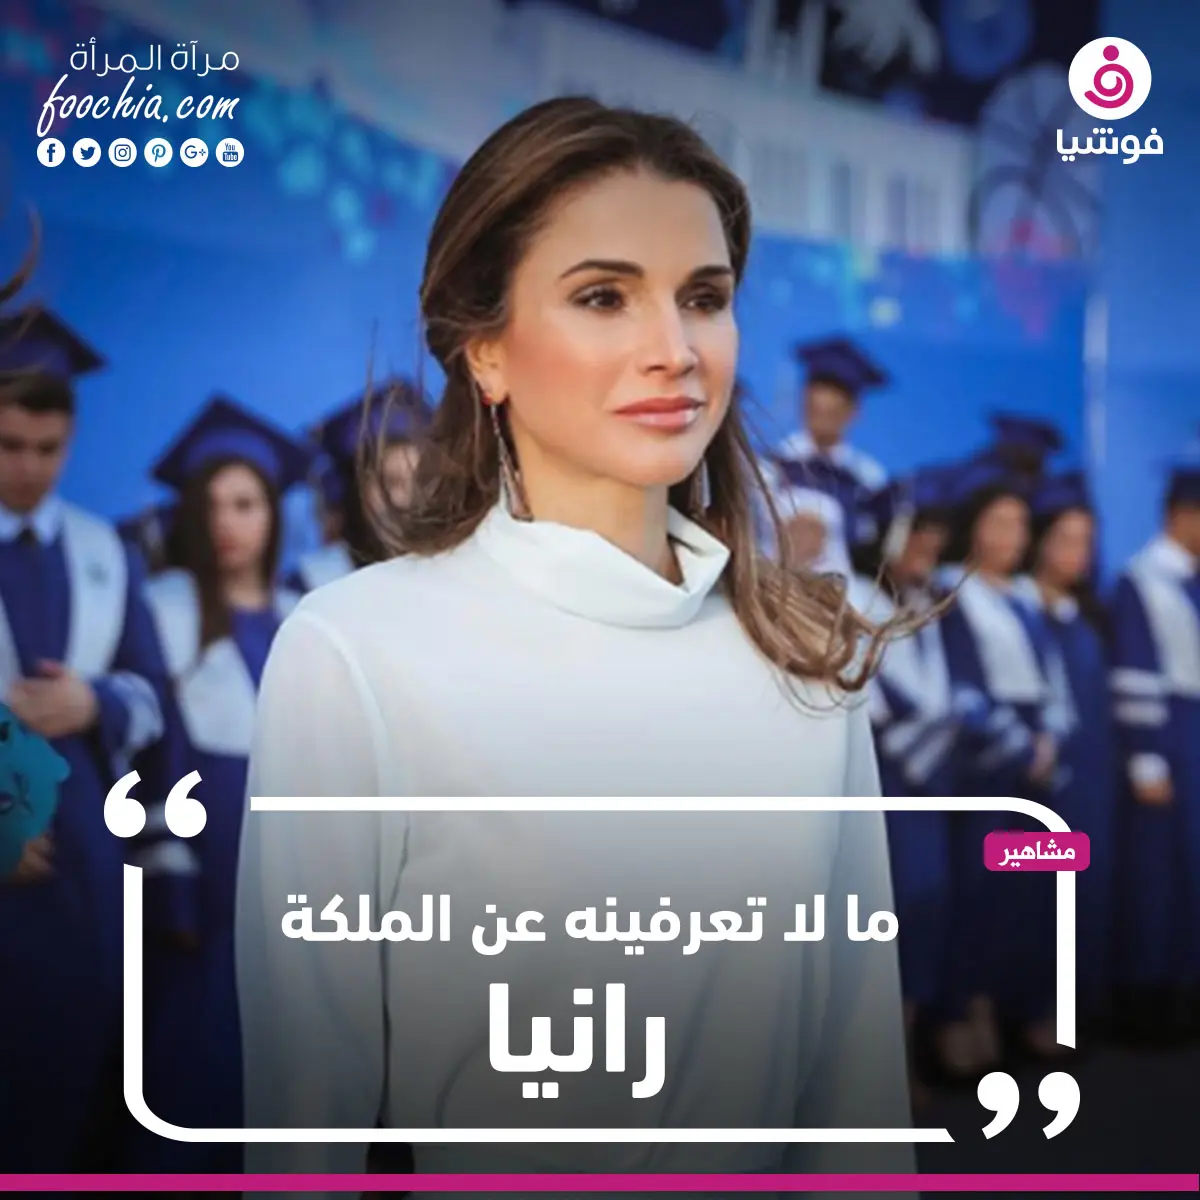 ما لا تعرفينه  عن "الملكة رانيا"